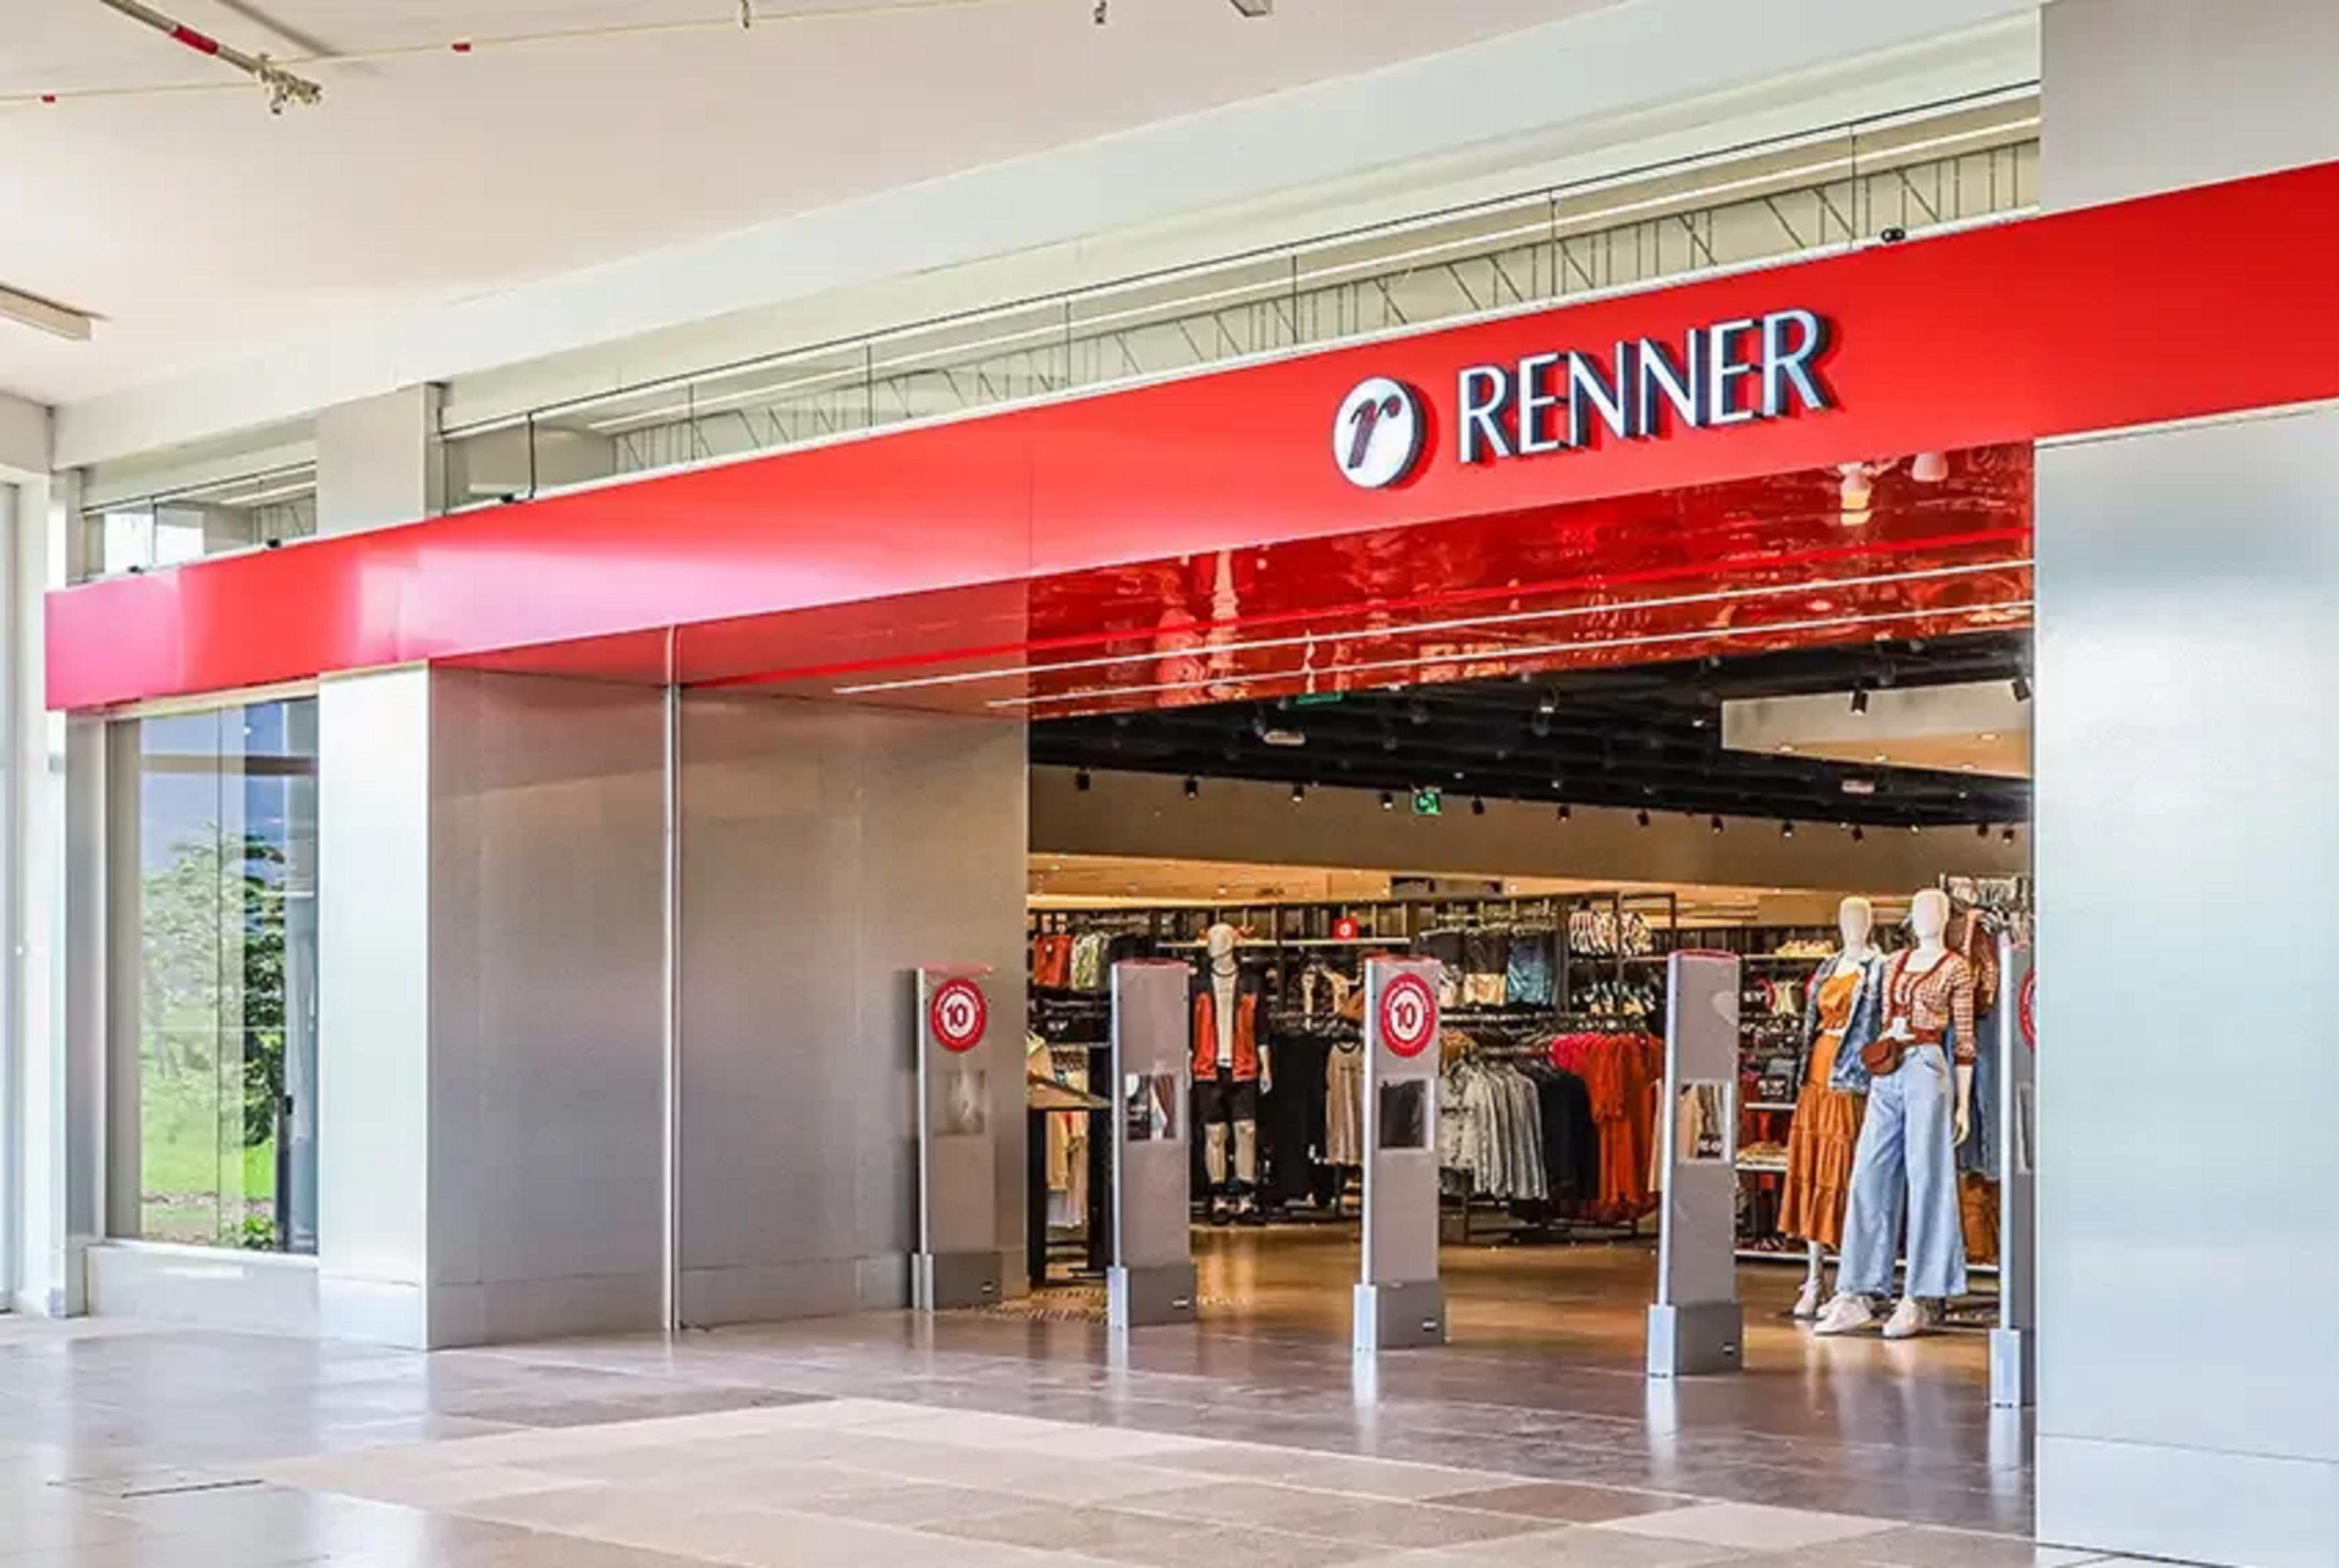 Renner fecha 20 lojas no Brasil e demite funcionários - Economia